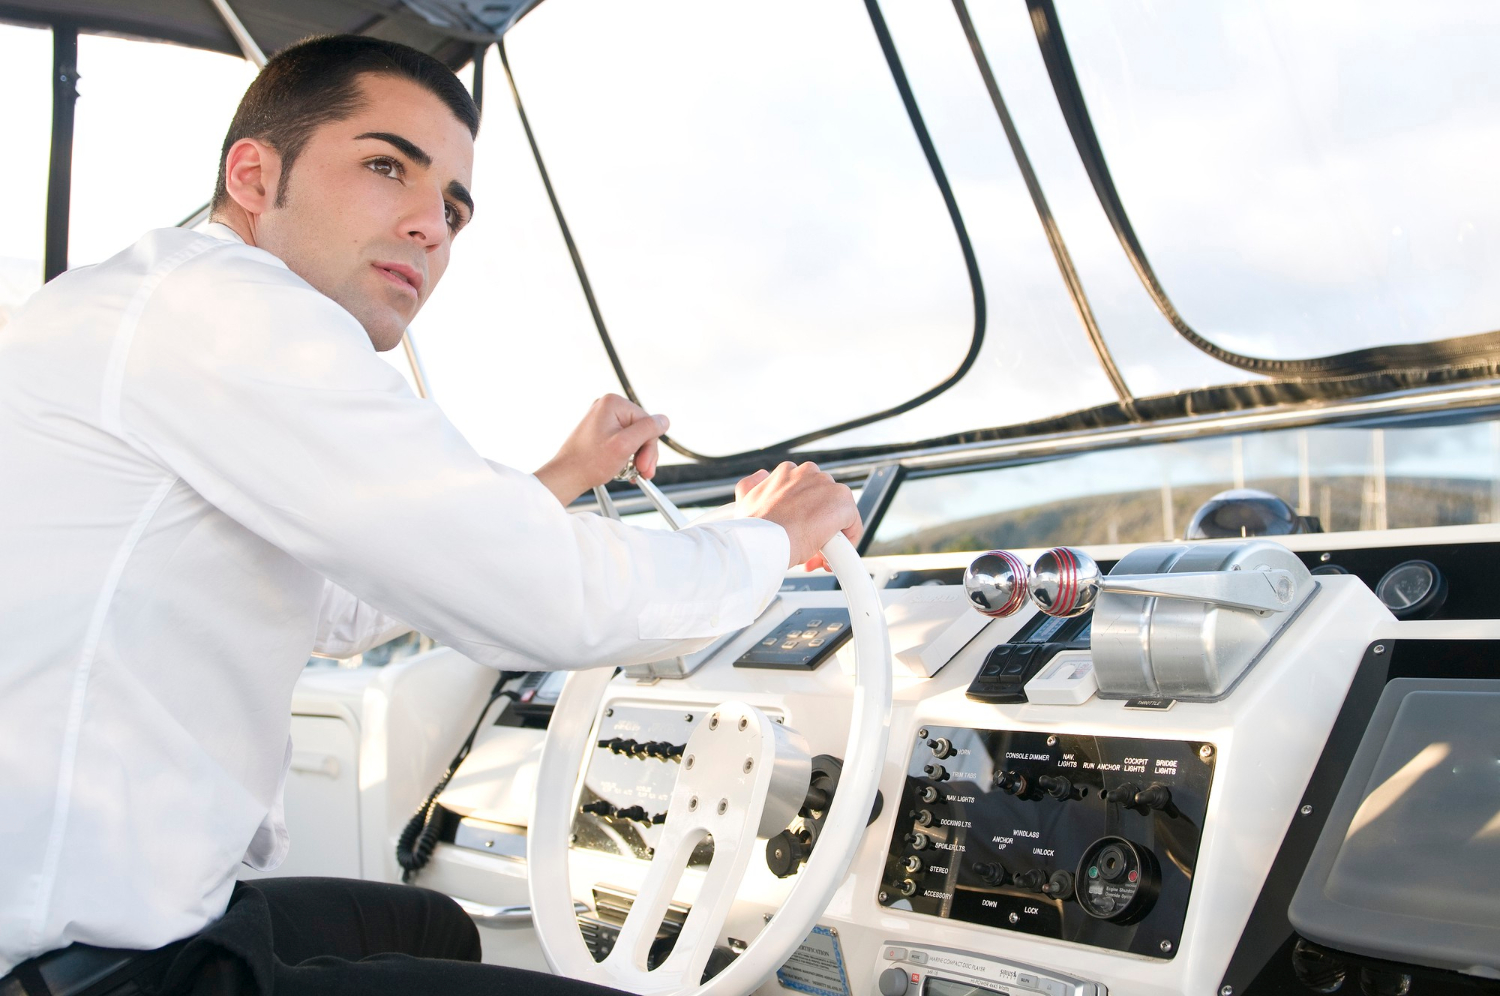 Permisul pentru Barca cu Motor: Navighează Legal și în Siguranță